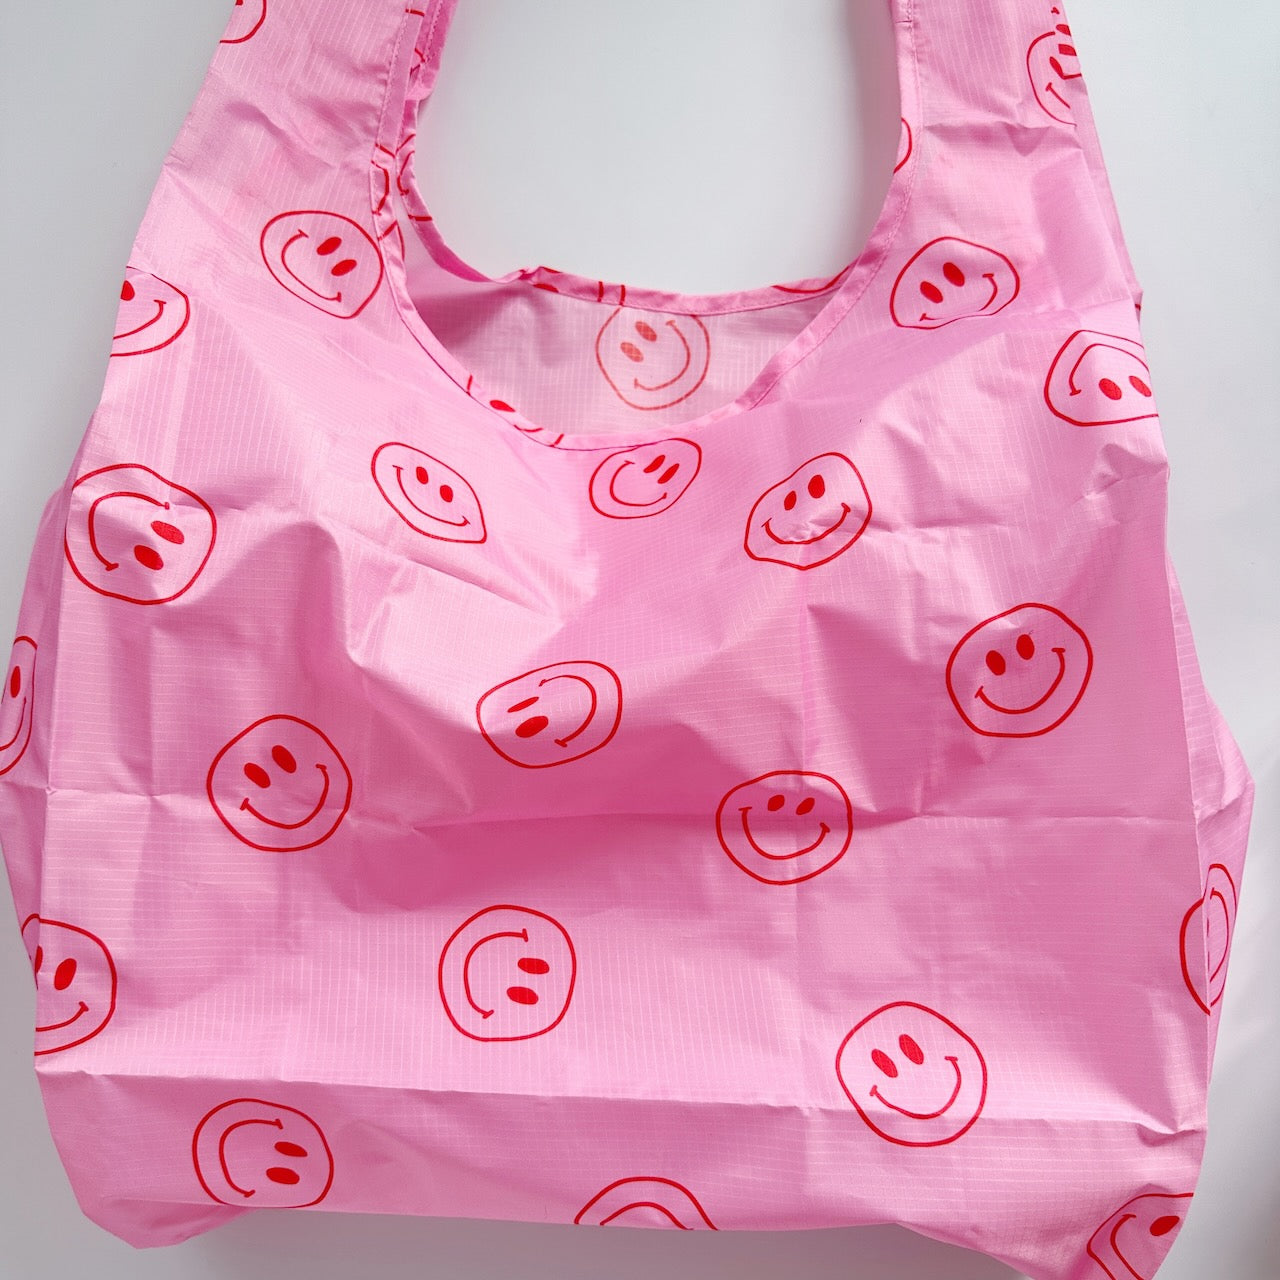 Shopping Bag, pink